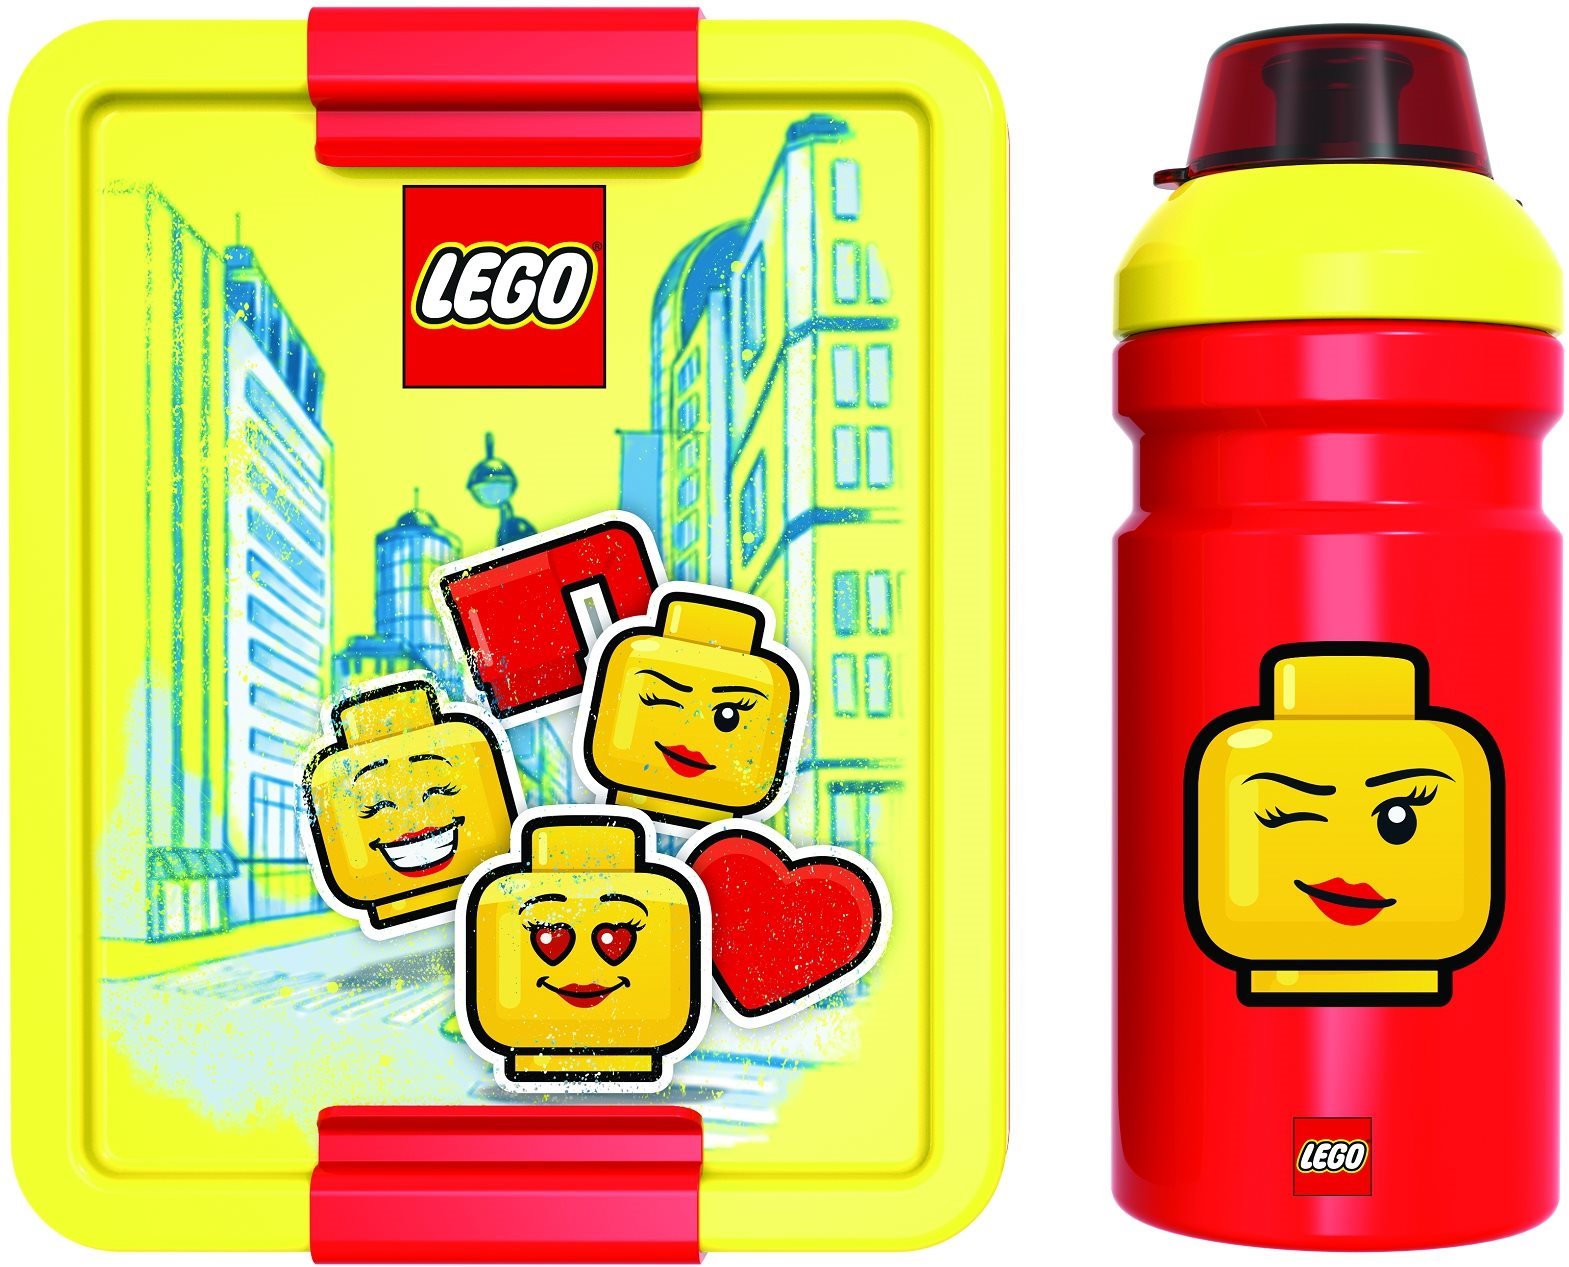 Iconic sárga-piros uzsonnásdoboz és kulacs szett - LEGO®